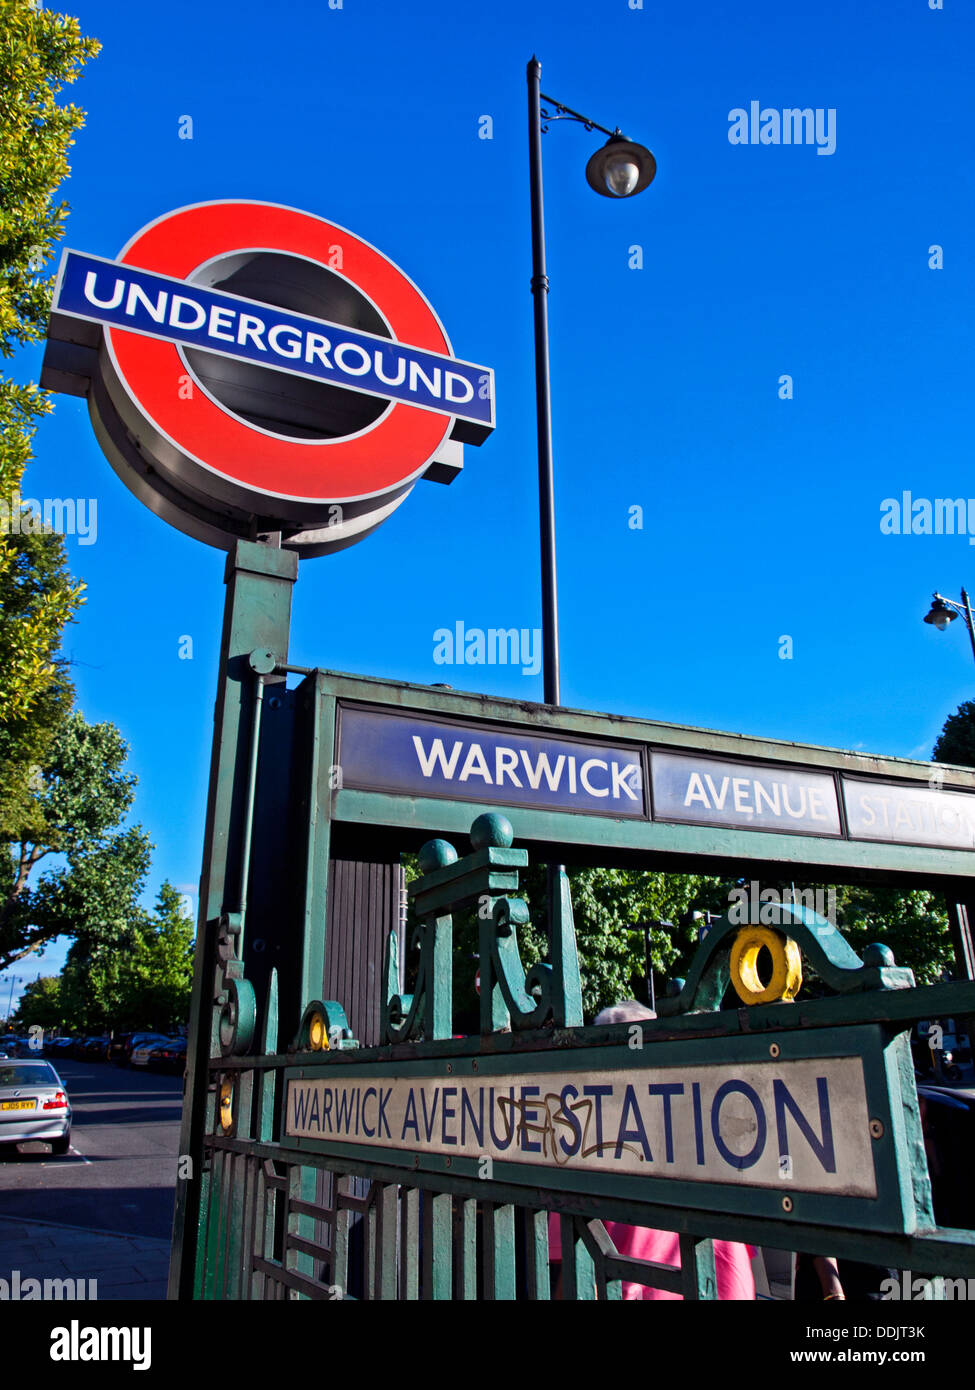 Warwick Avenue Tube Station showing London Underground logo, North West London, City of Westminster, England, United Kingdom Stock Photo